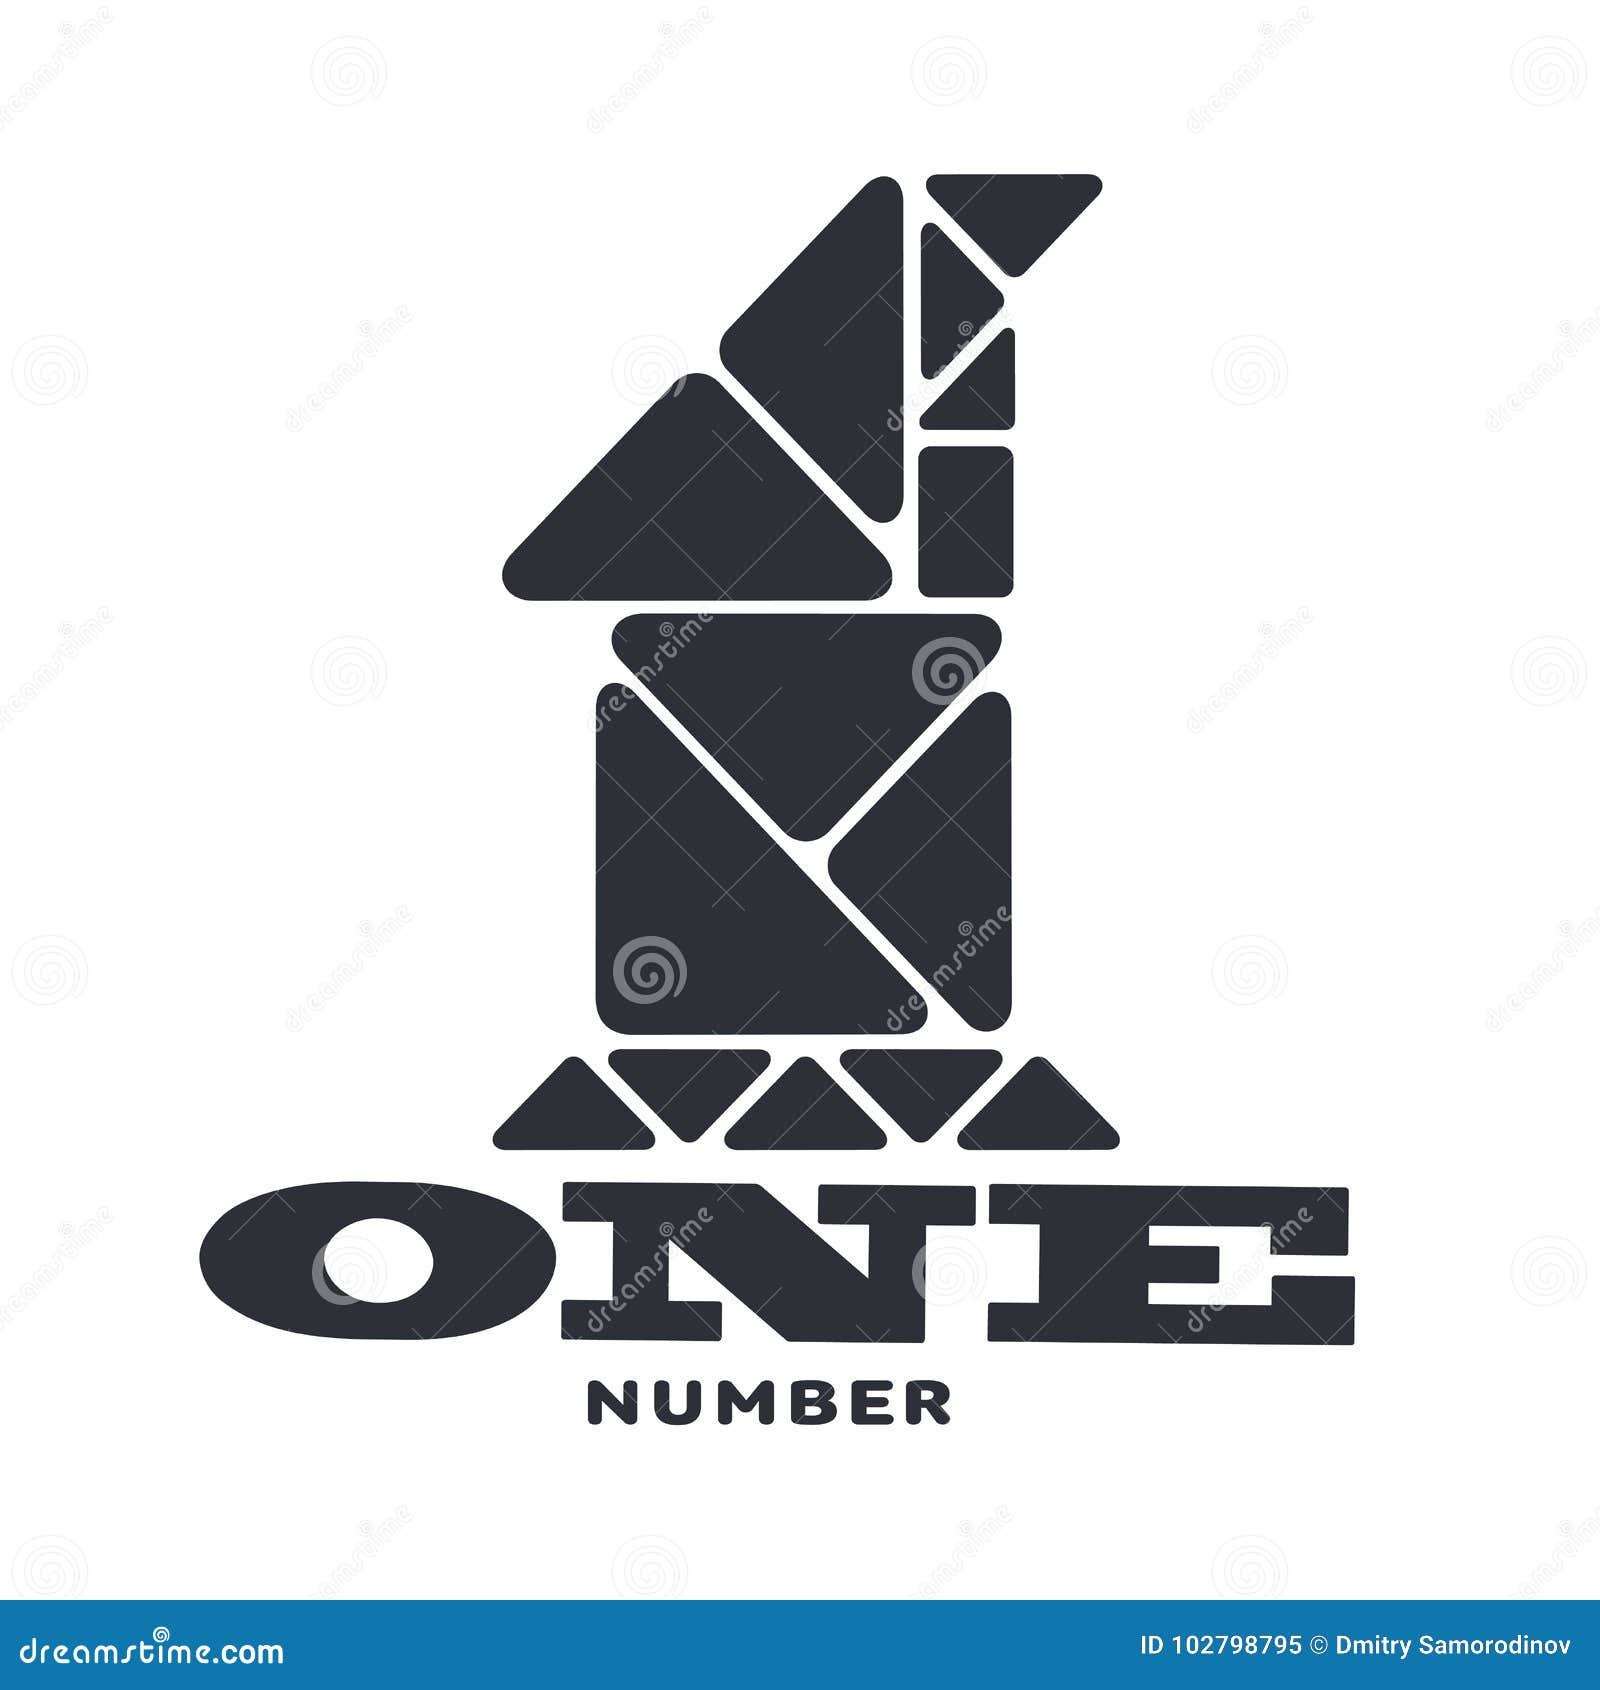 Numeric logo one stock illustration. Illustration of icon - 102798795